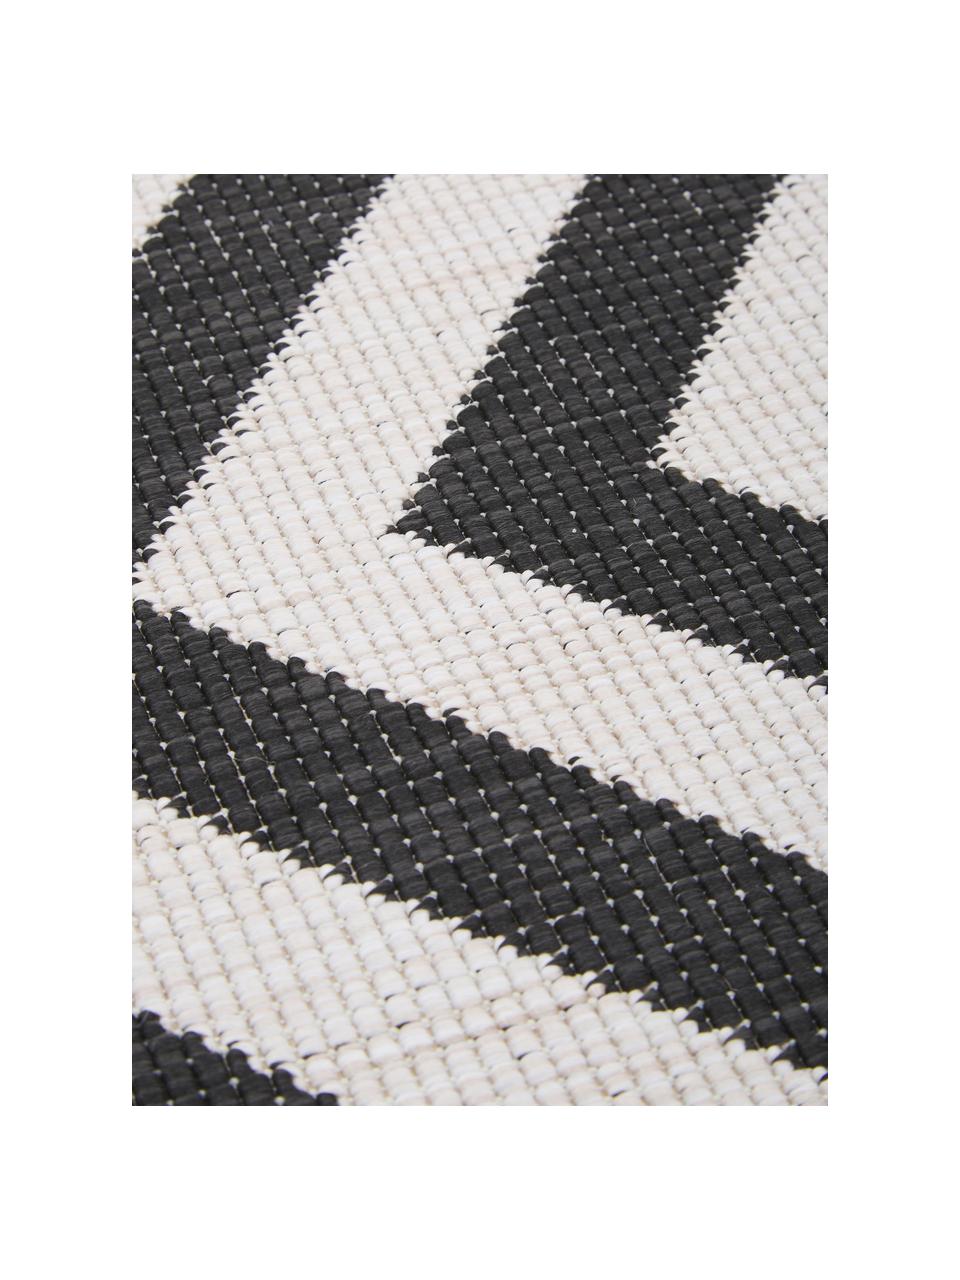 Interiérový/exteriérový oboustranný koberec s klikatým vzorem Palma, 100 % polypropylen, Černá, bílá, Š 120 cm, D 170 cm (velikost S)